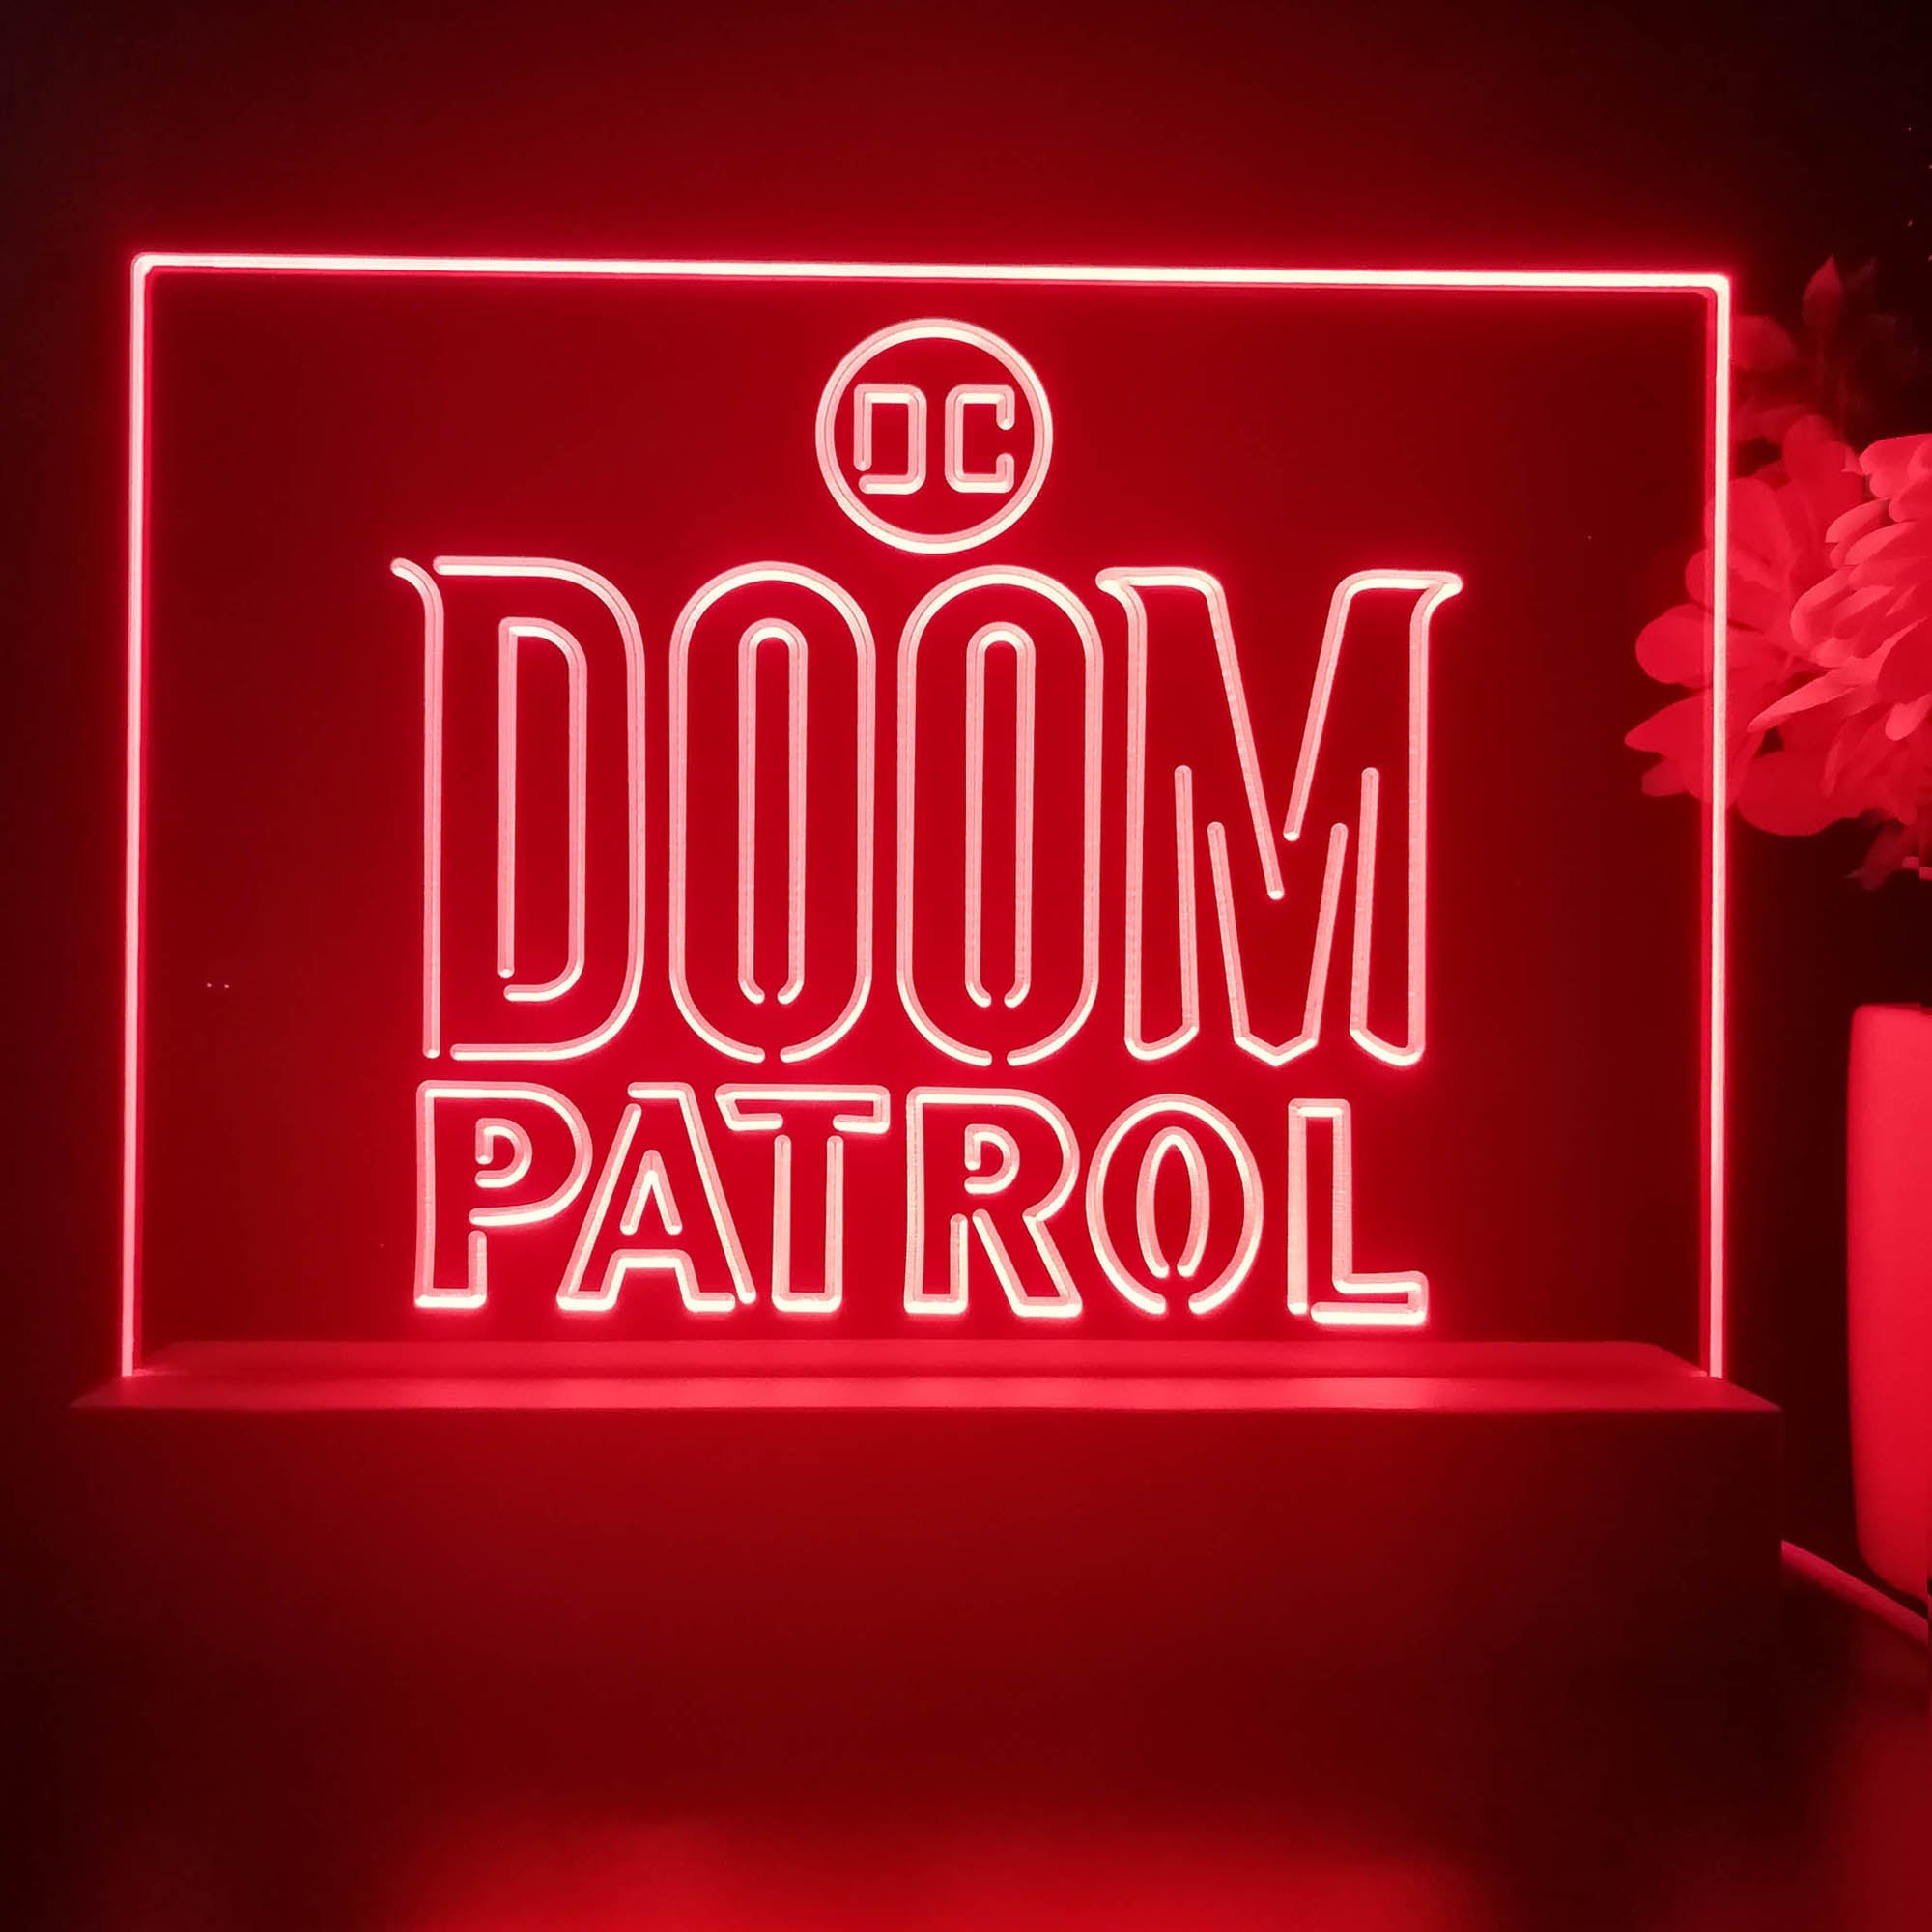 Doom Patrol 3D Illusion Night Light Desk Lamp